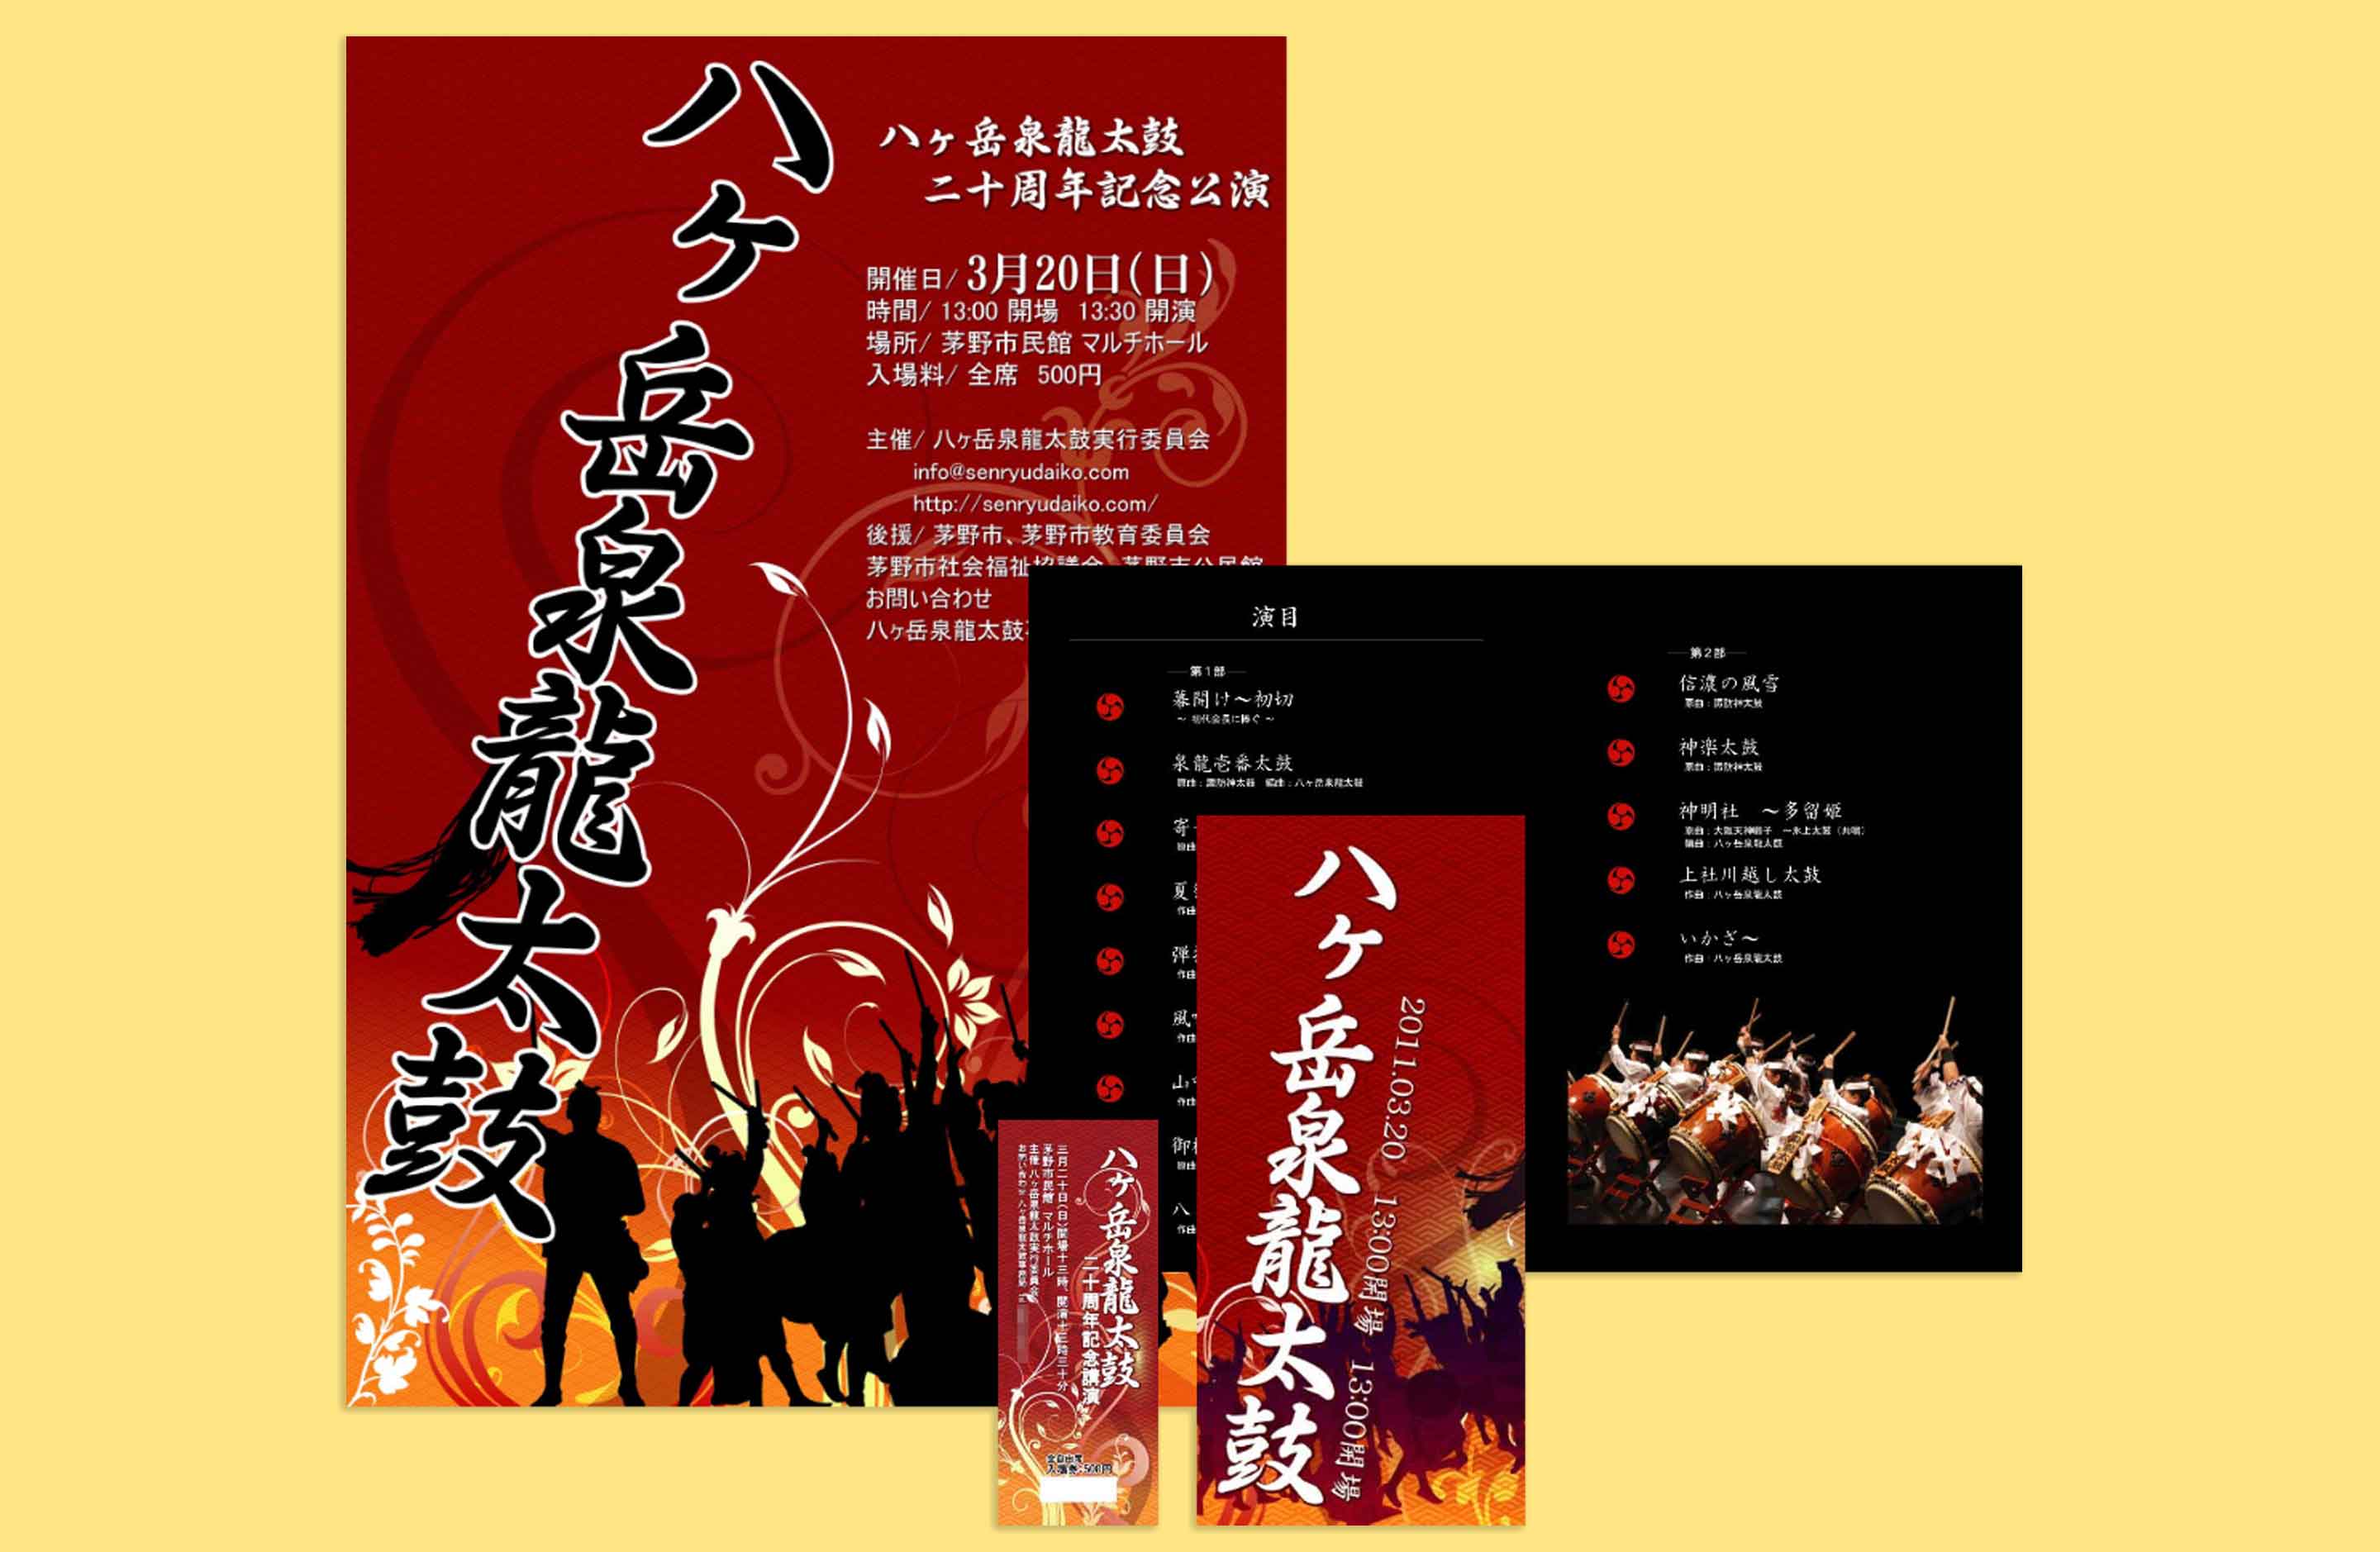 Senryudaiko 20th anniversary Performance Ticket